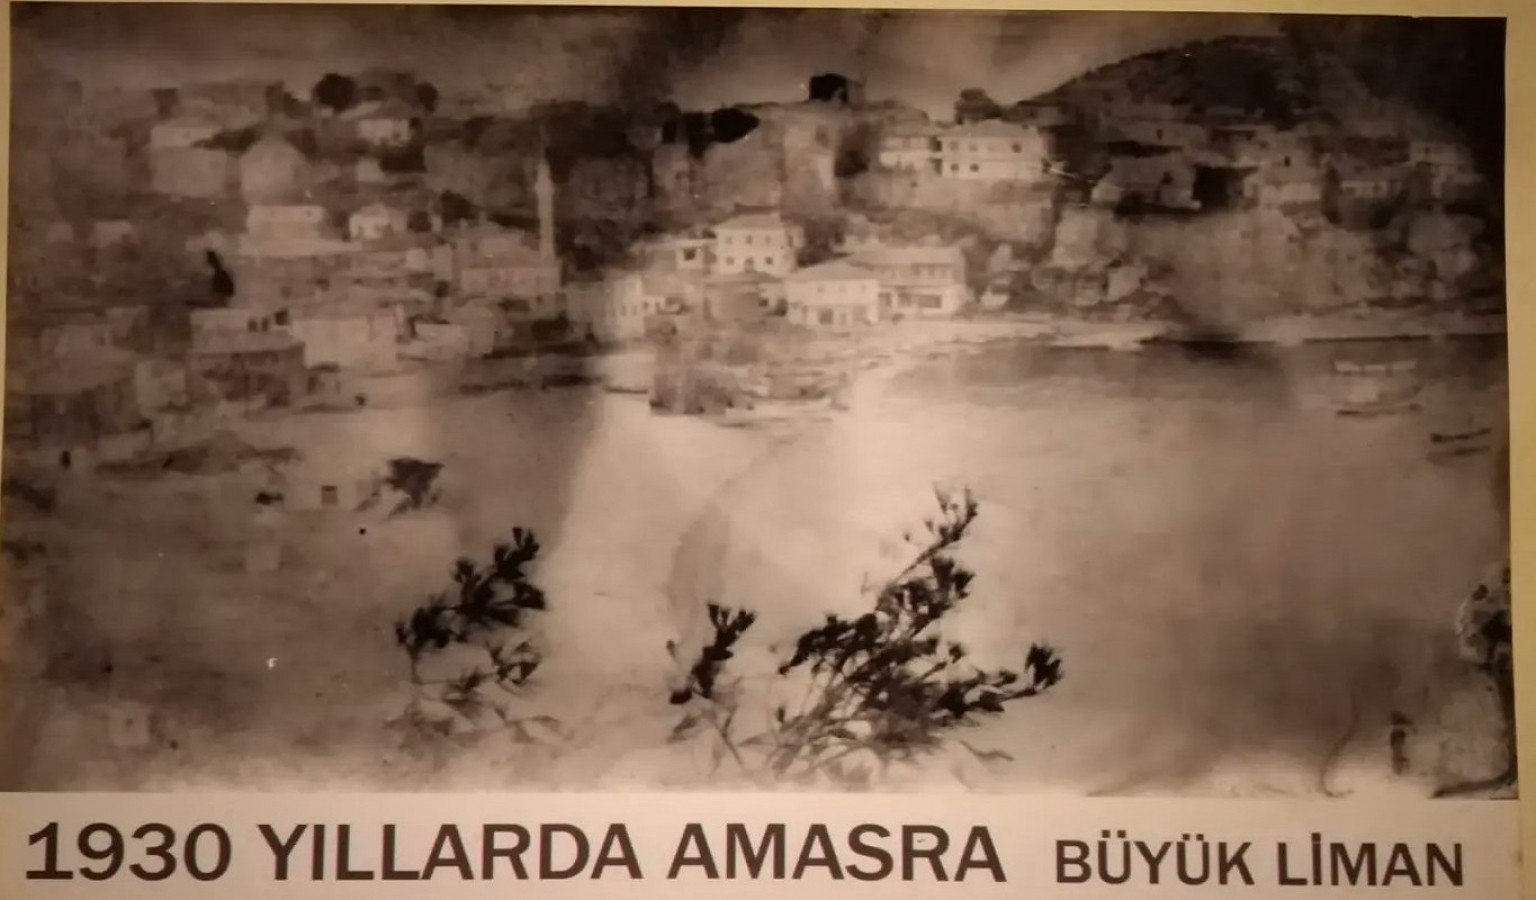 Eski Amasra fotoğraflarından albüm yapılacak;